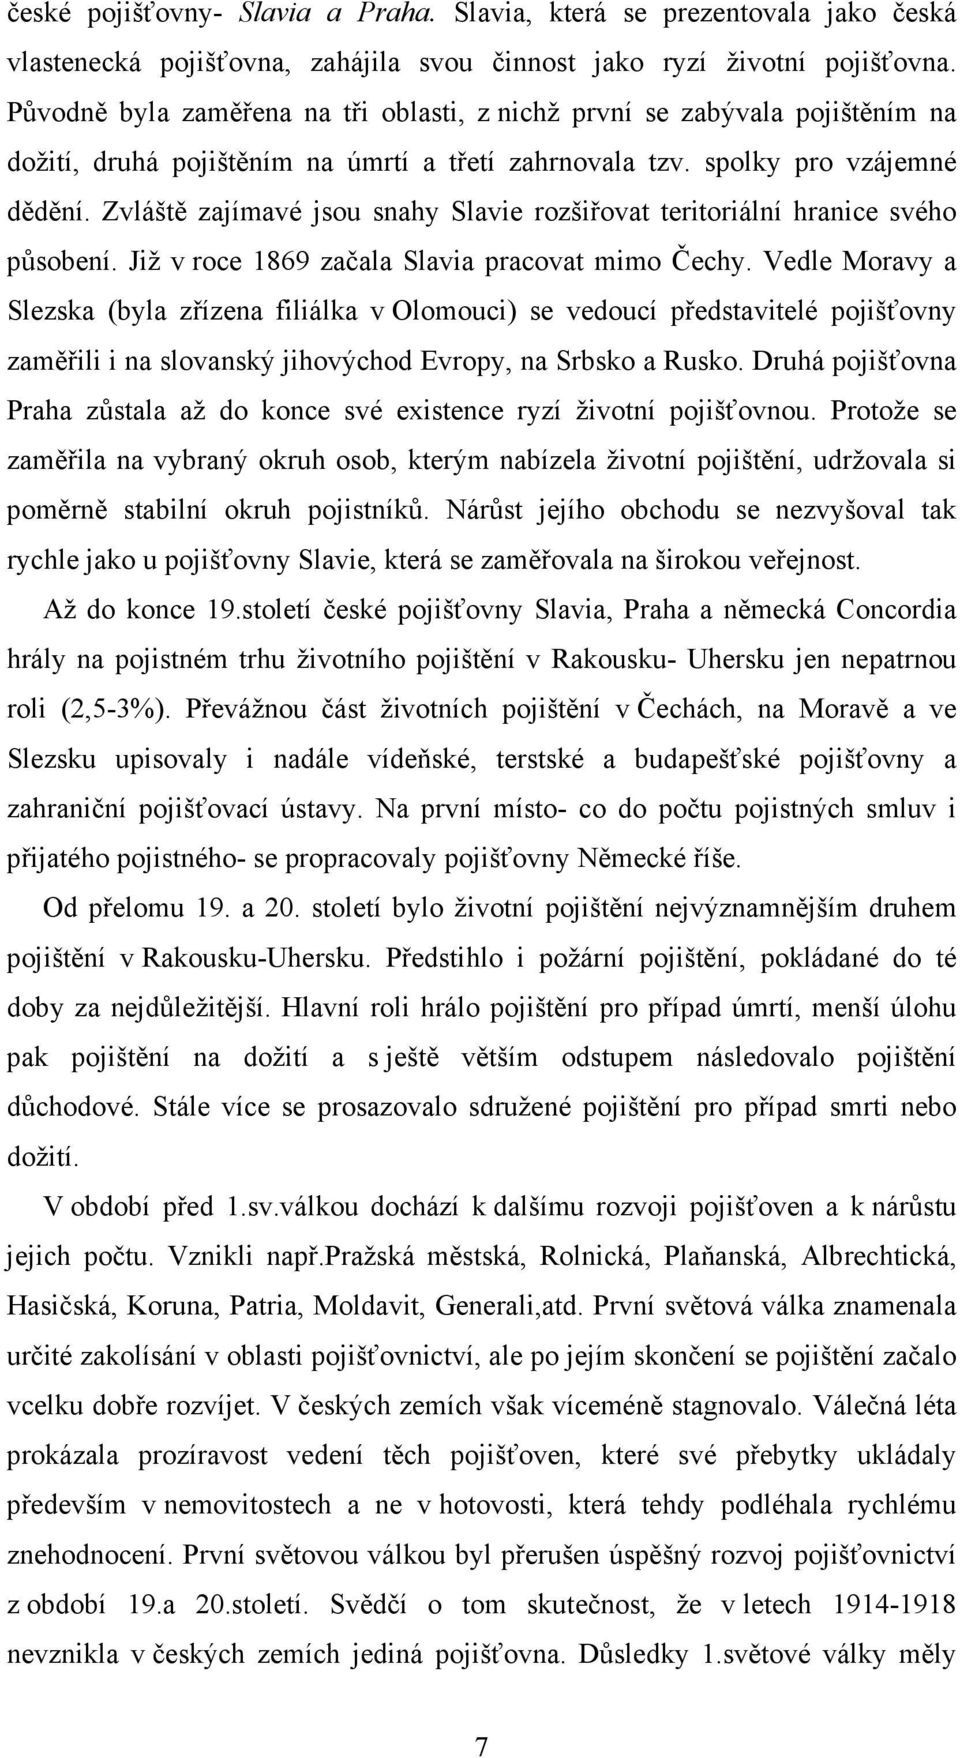 Zvláště zajímavé jsou snahy Slavie rozšiřovat teritoriální hranice svého působení. Již v roce 1869 začala Slavia pracovat mimo Čechy.